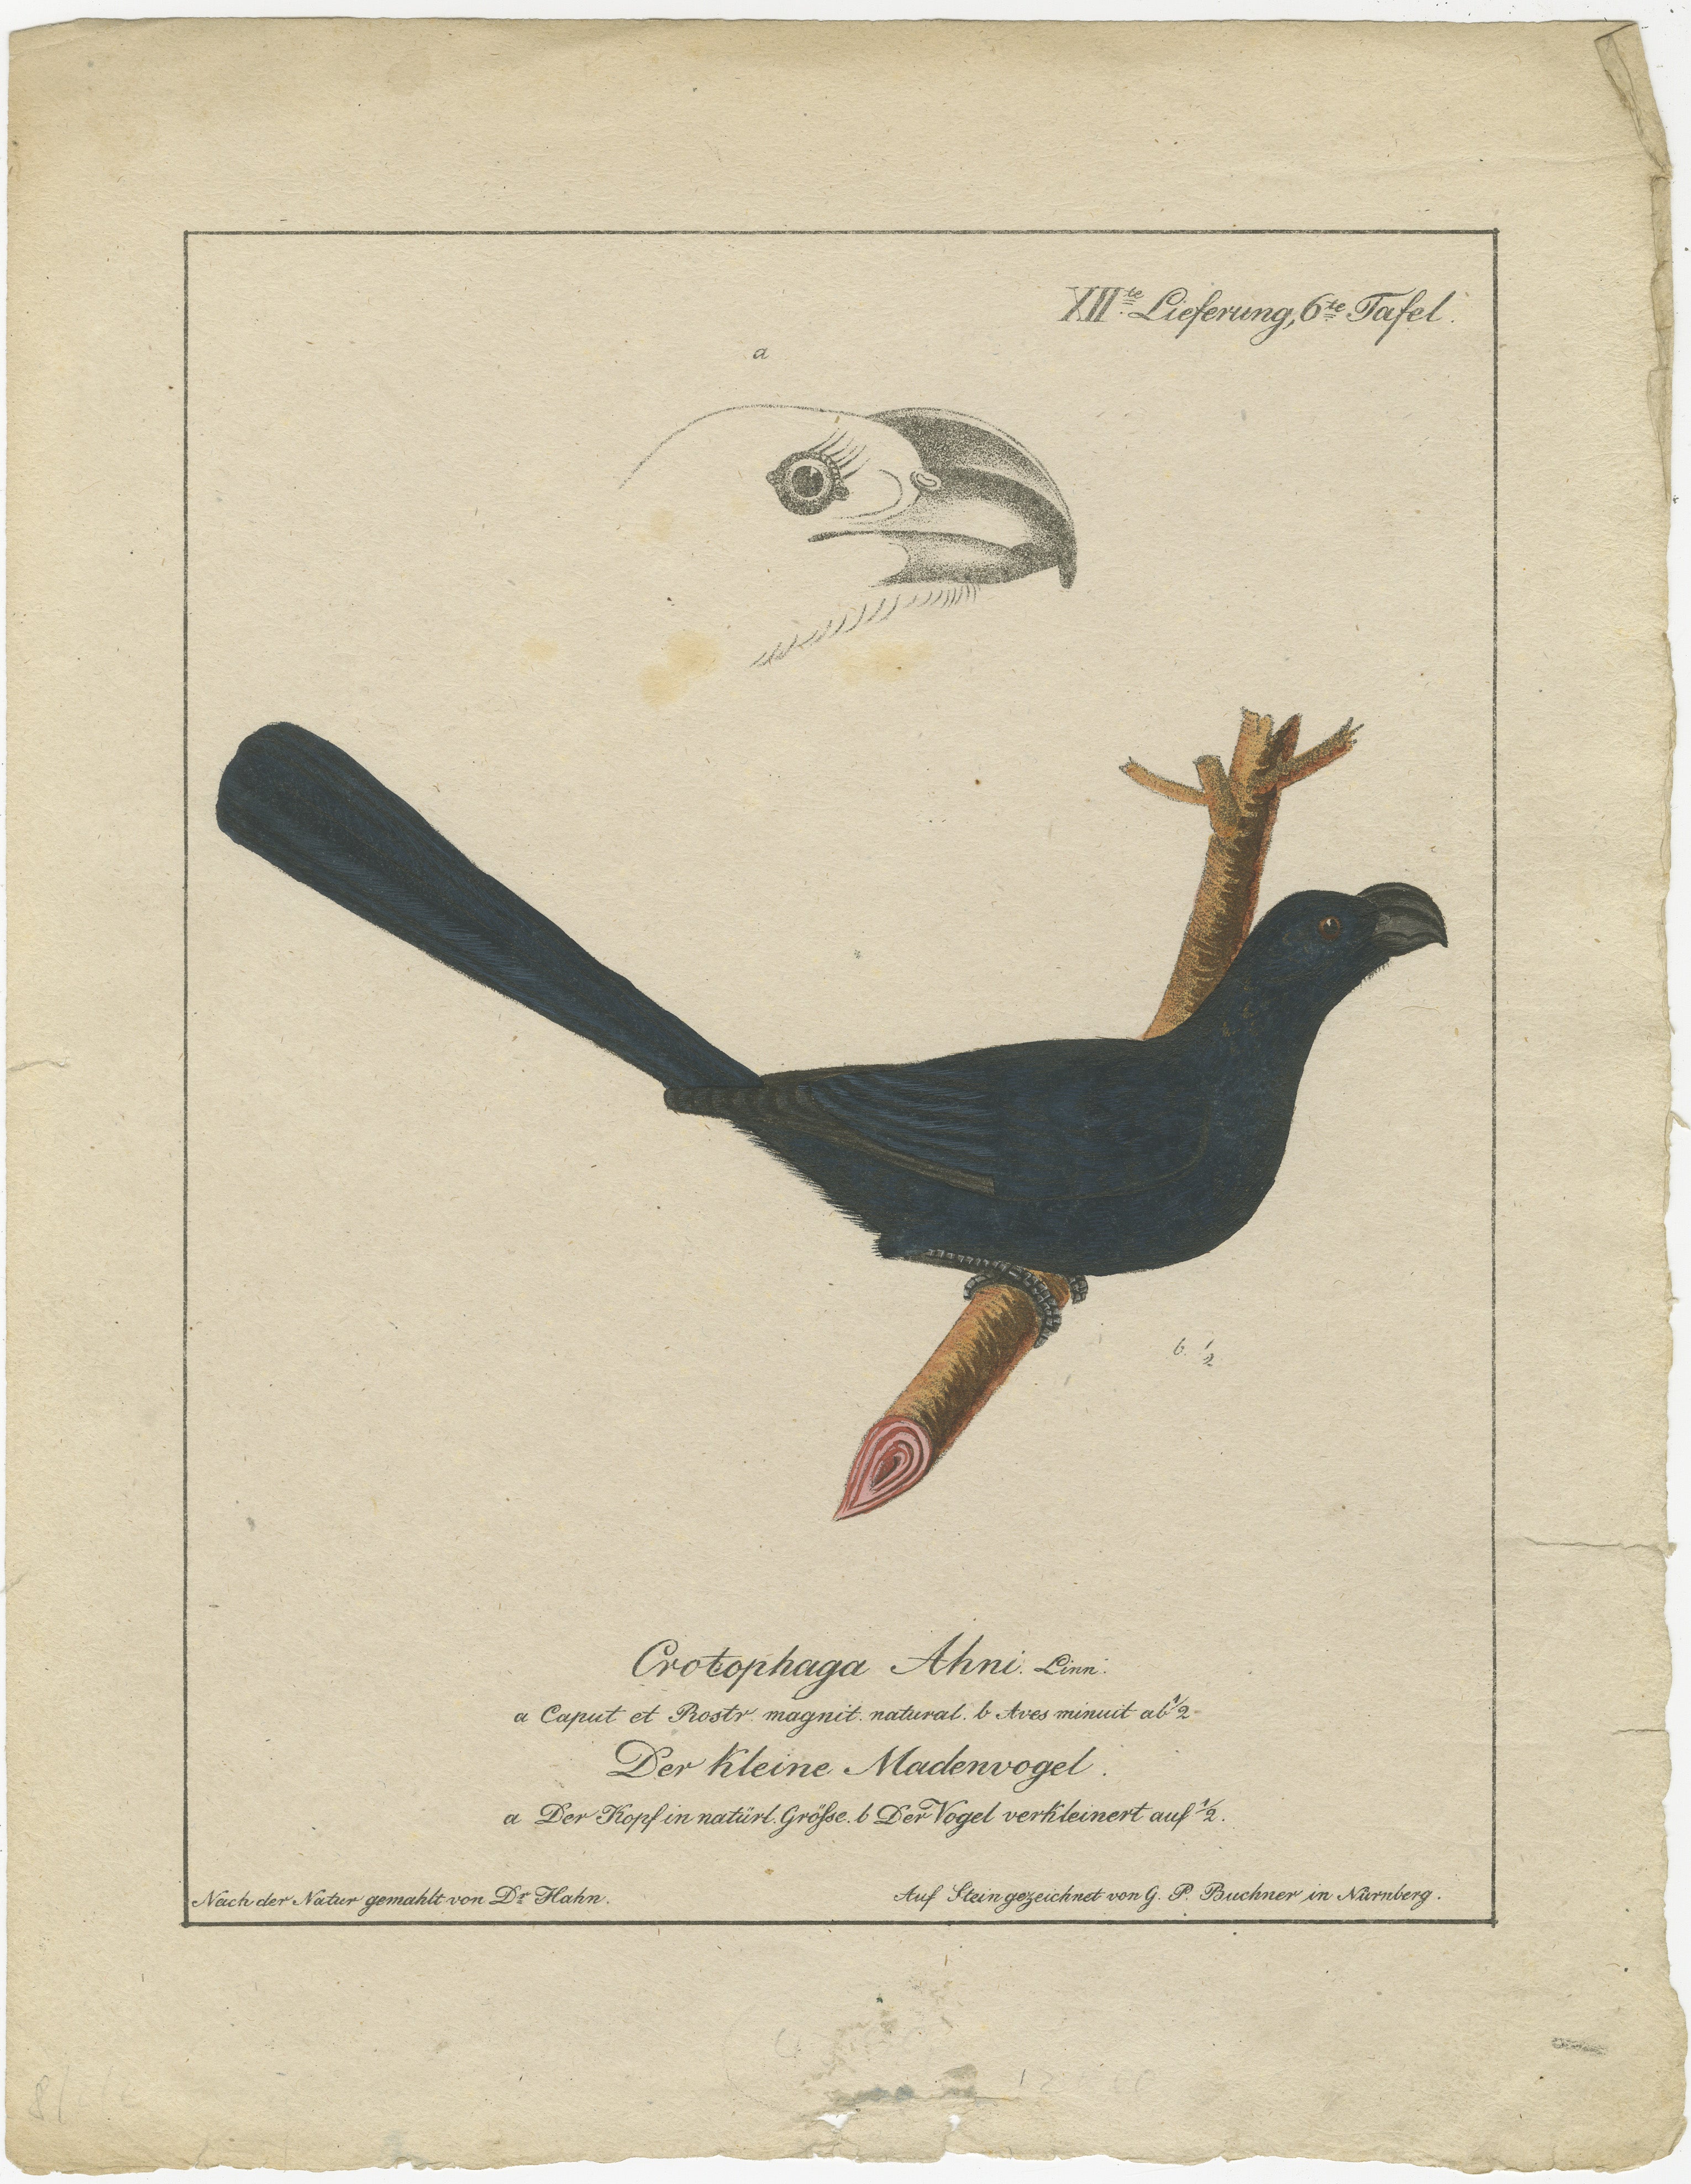 Il s'agit d'une lithographie du début du XIXe siècle, colorée à la main et magnifiquement détaillée, attribuée à Carl Wilhelm Hahn. Il présente le cotinga étoilé (Cotinga cayana), un oiseau connu pour son plumage saisissant et ses couleurs vives. La